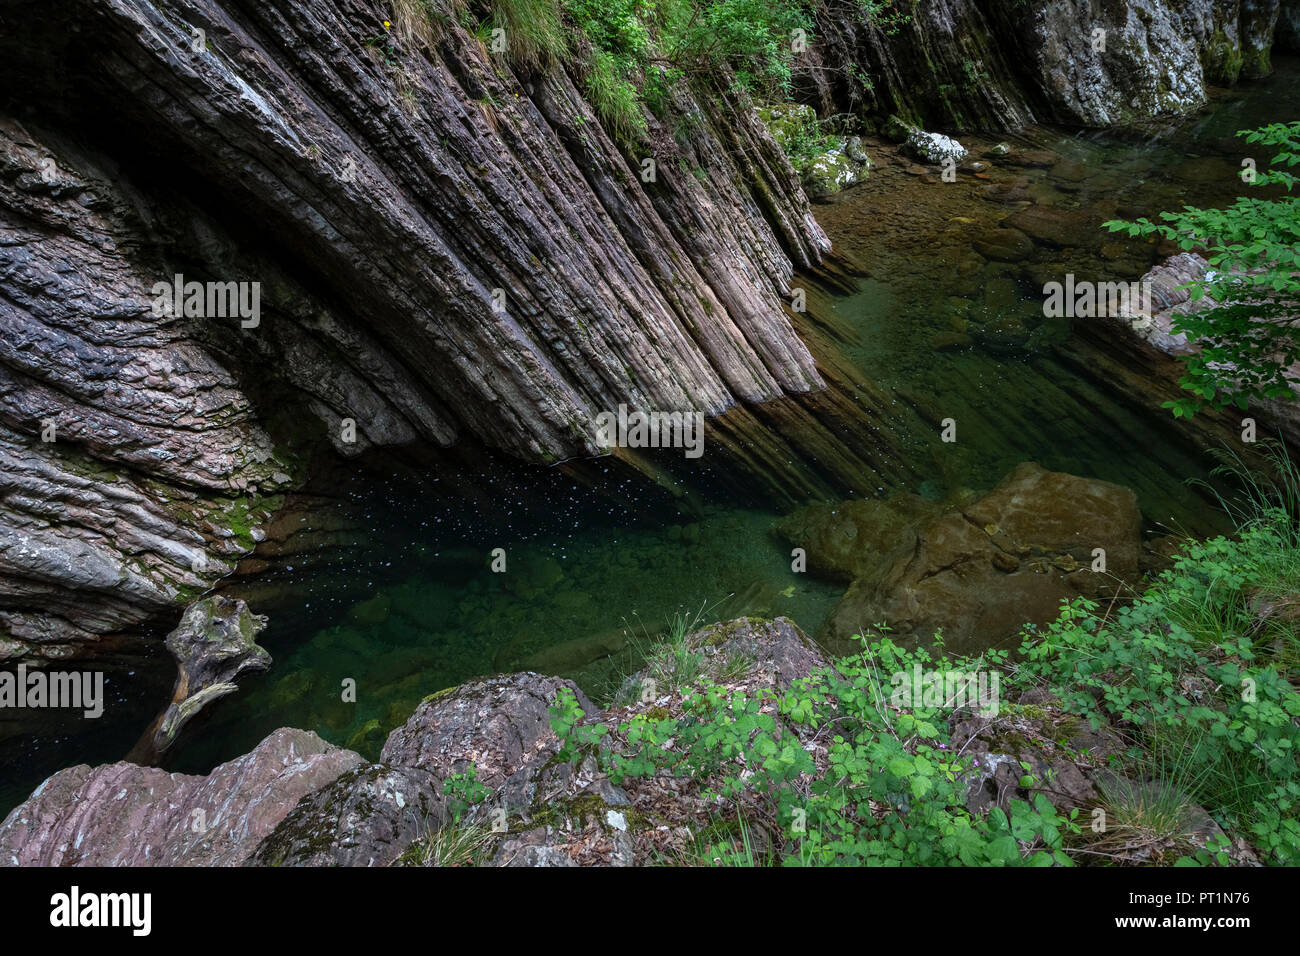 The Breggia gorges in Muggio Valley, Mendrisio District, Canton Ticino, Switzerland, Stock Photo